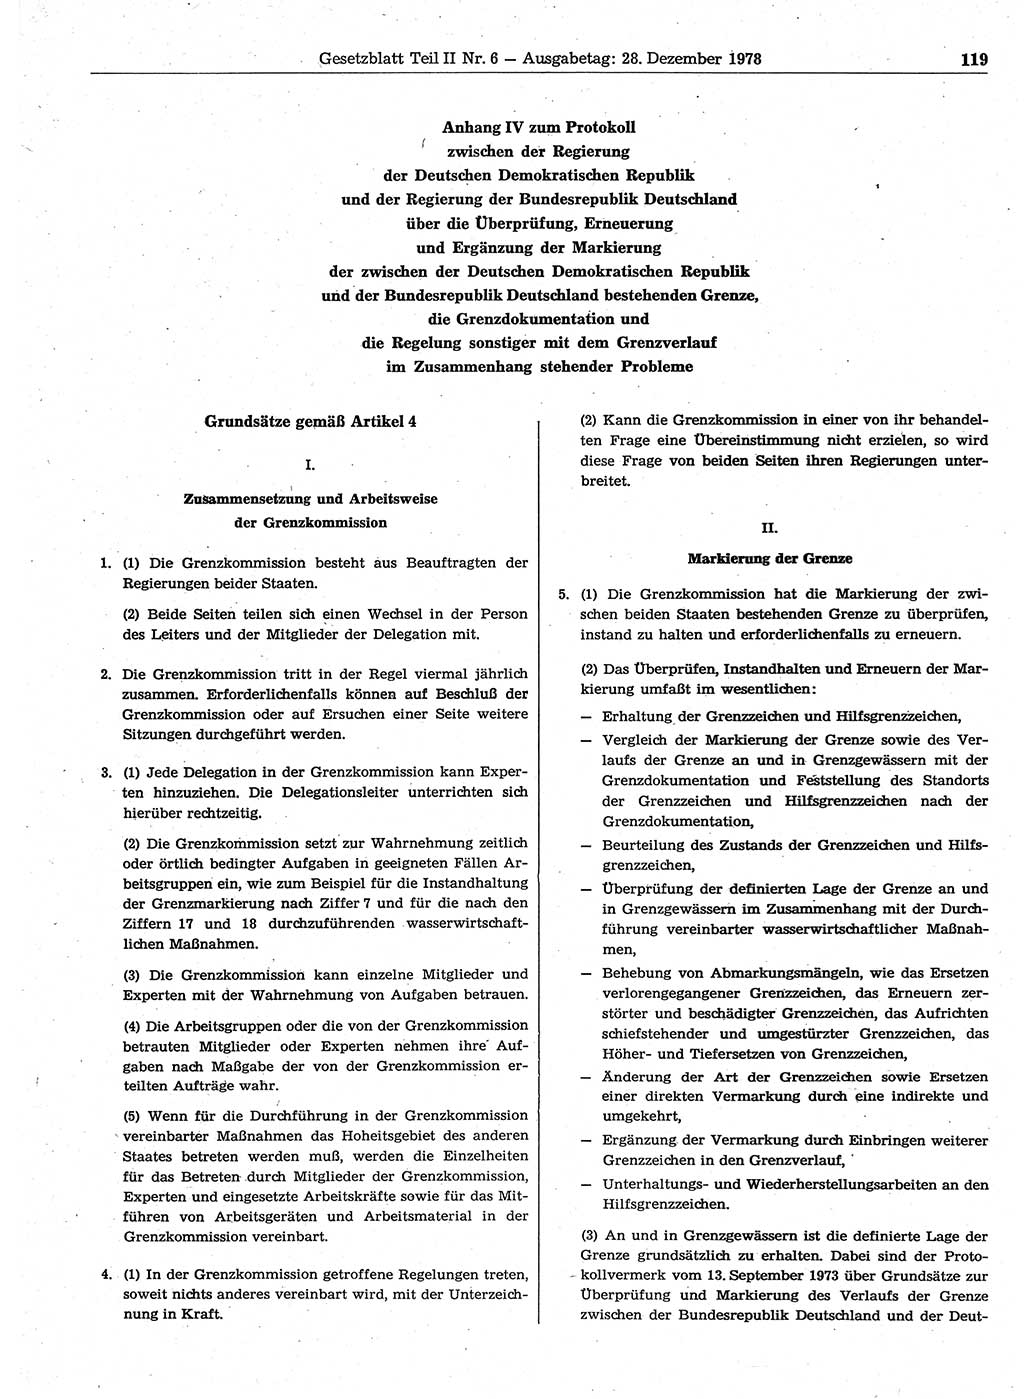 Gesetzblatt (GBl.) der Deutschen Demokratischen Republik (DDR) Teil ⅠⅠ 1978, Seite 119 (GBl. DDR ⅠⅠ 1978, S. 119)